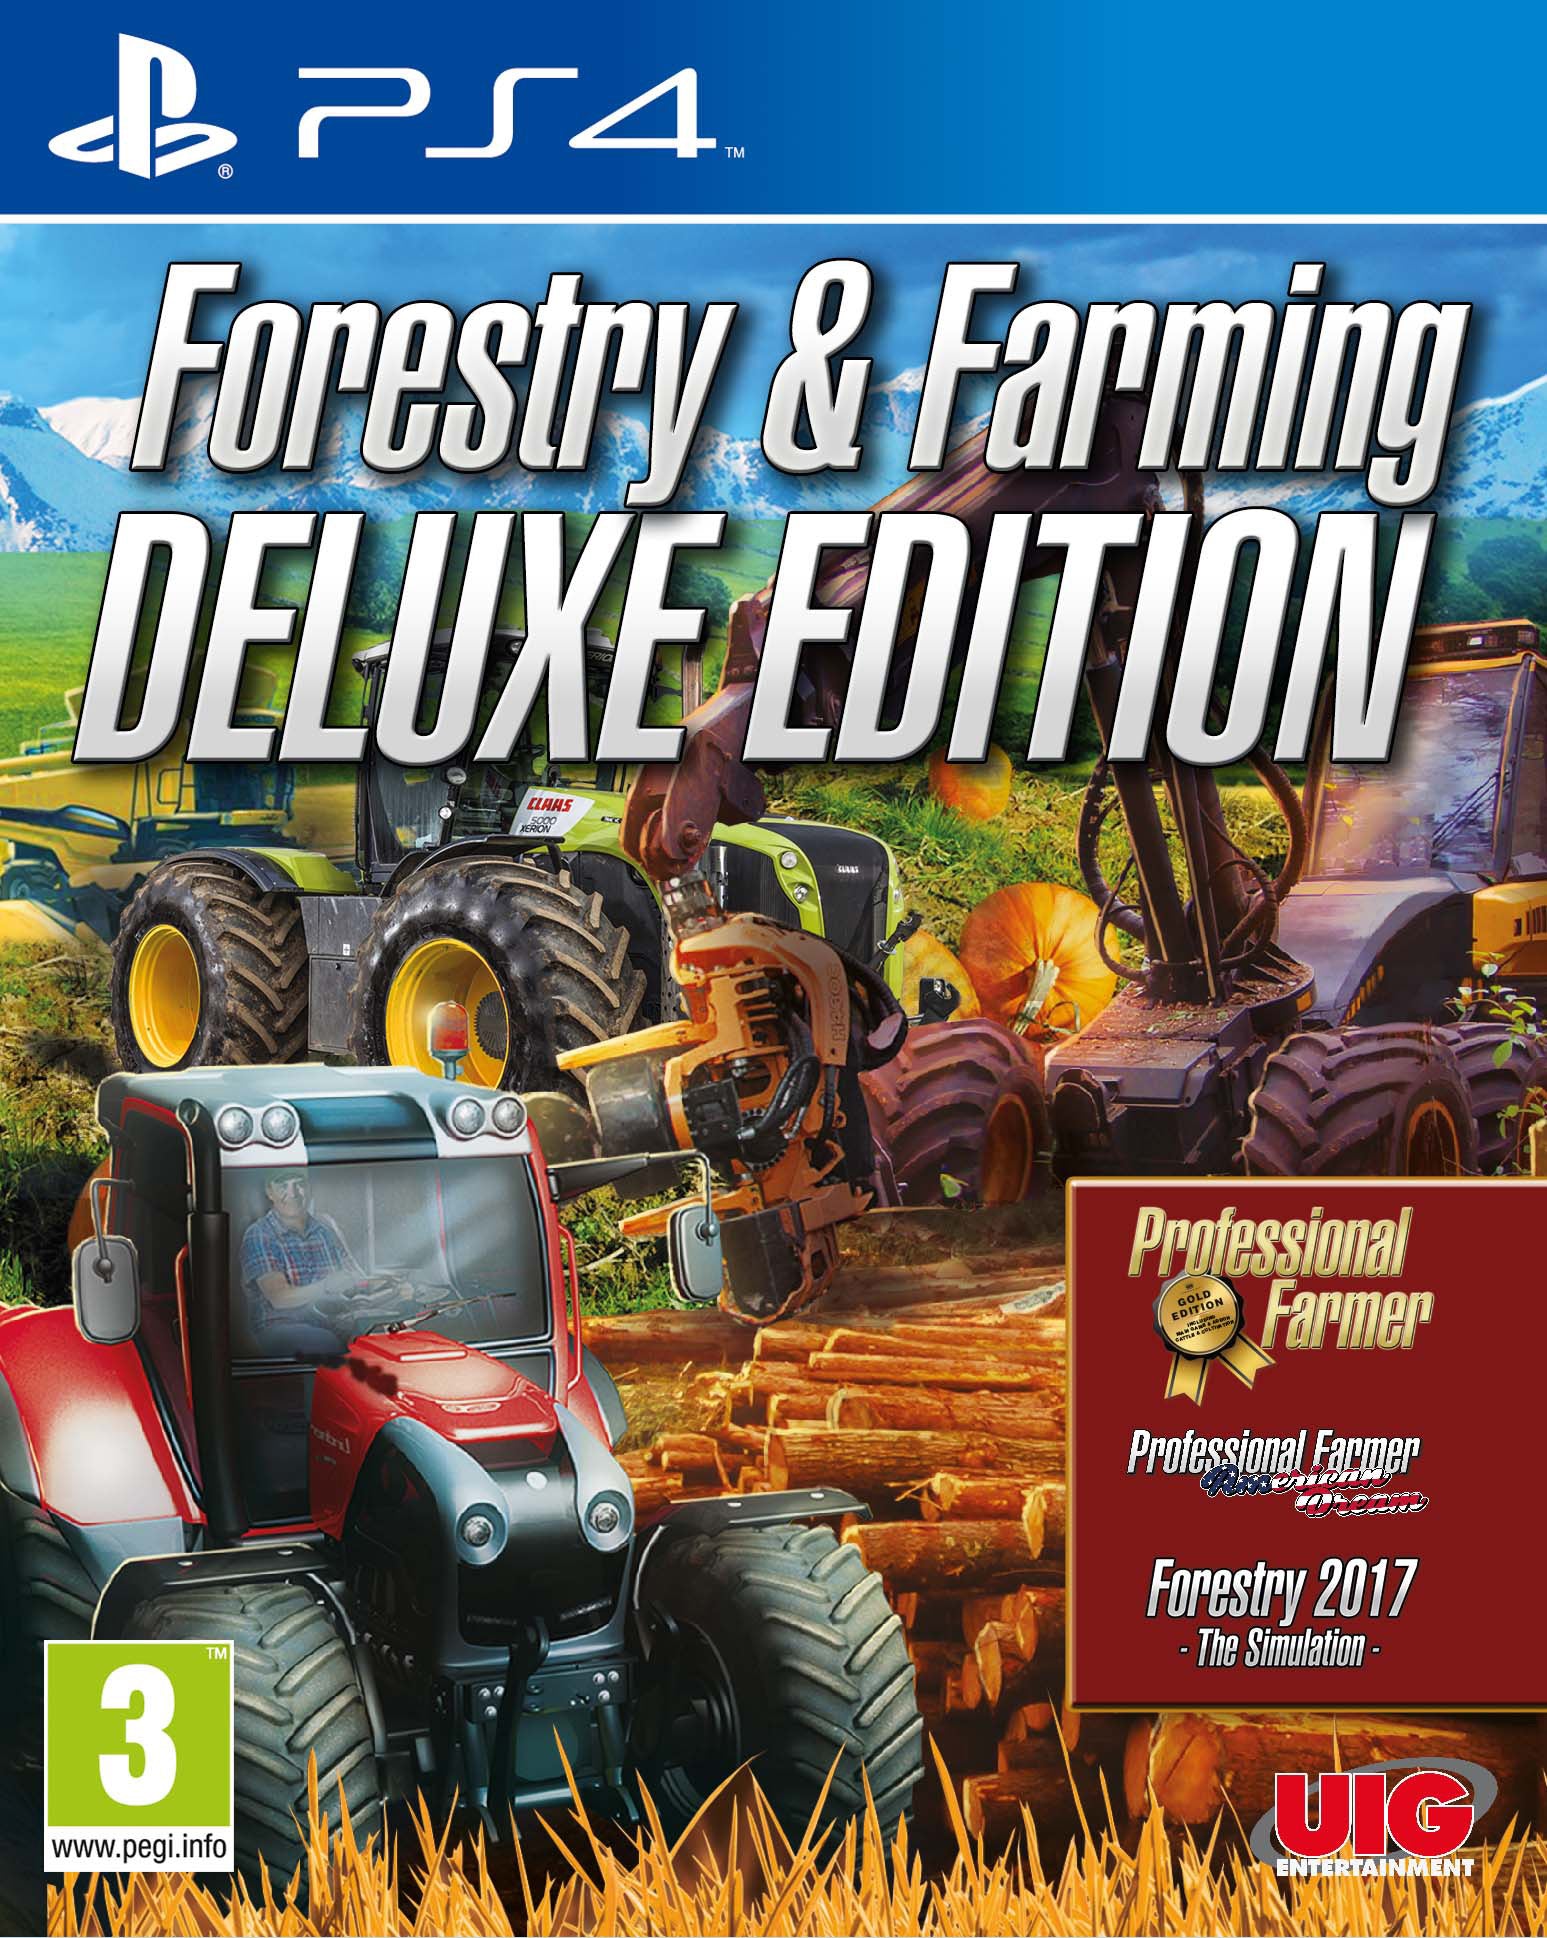 Farmer & Forestry Bundle